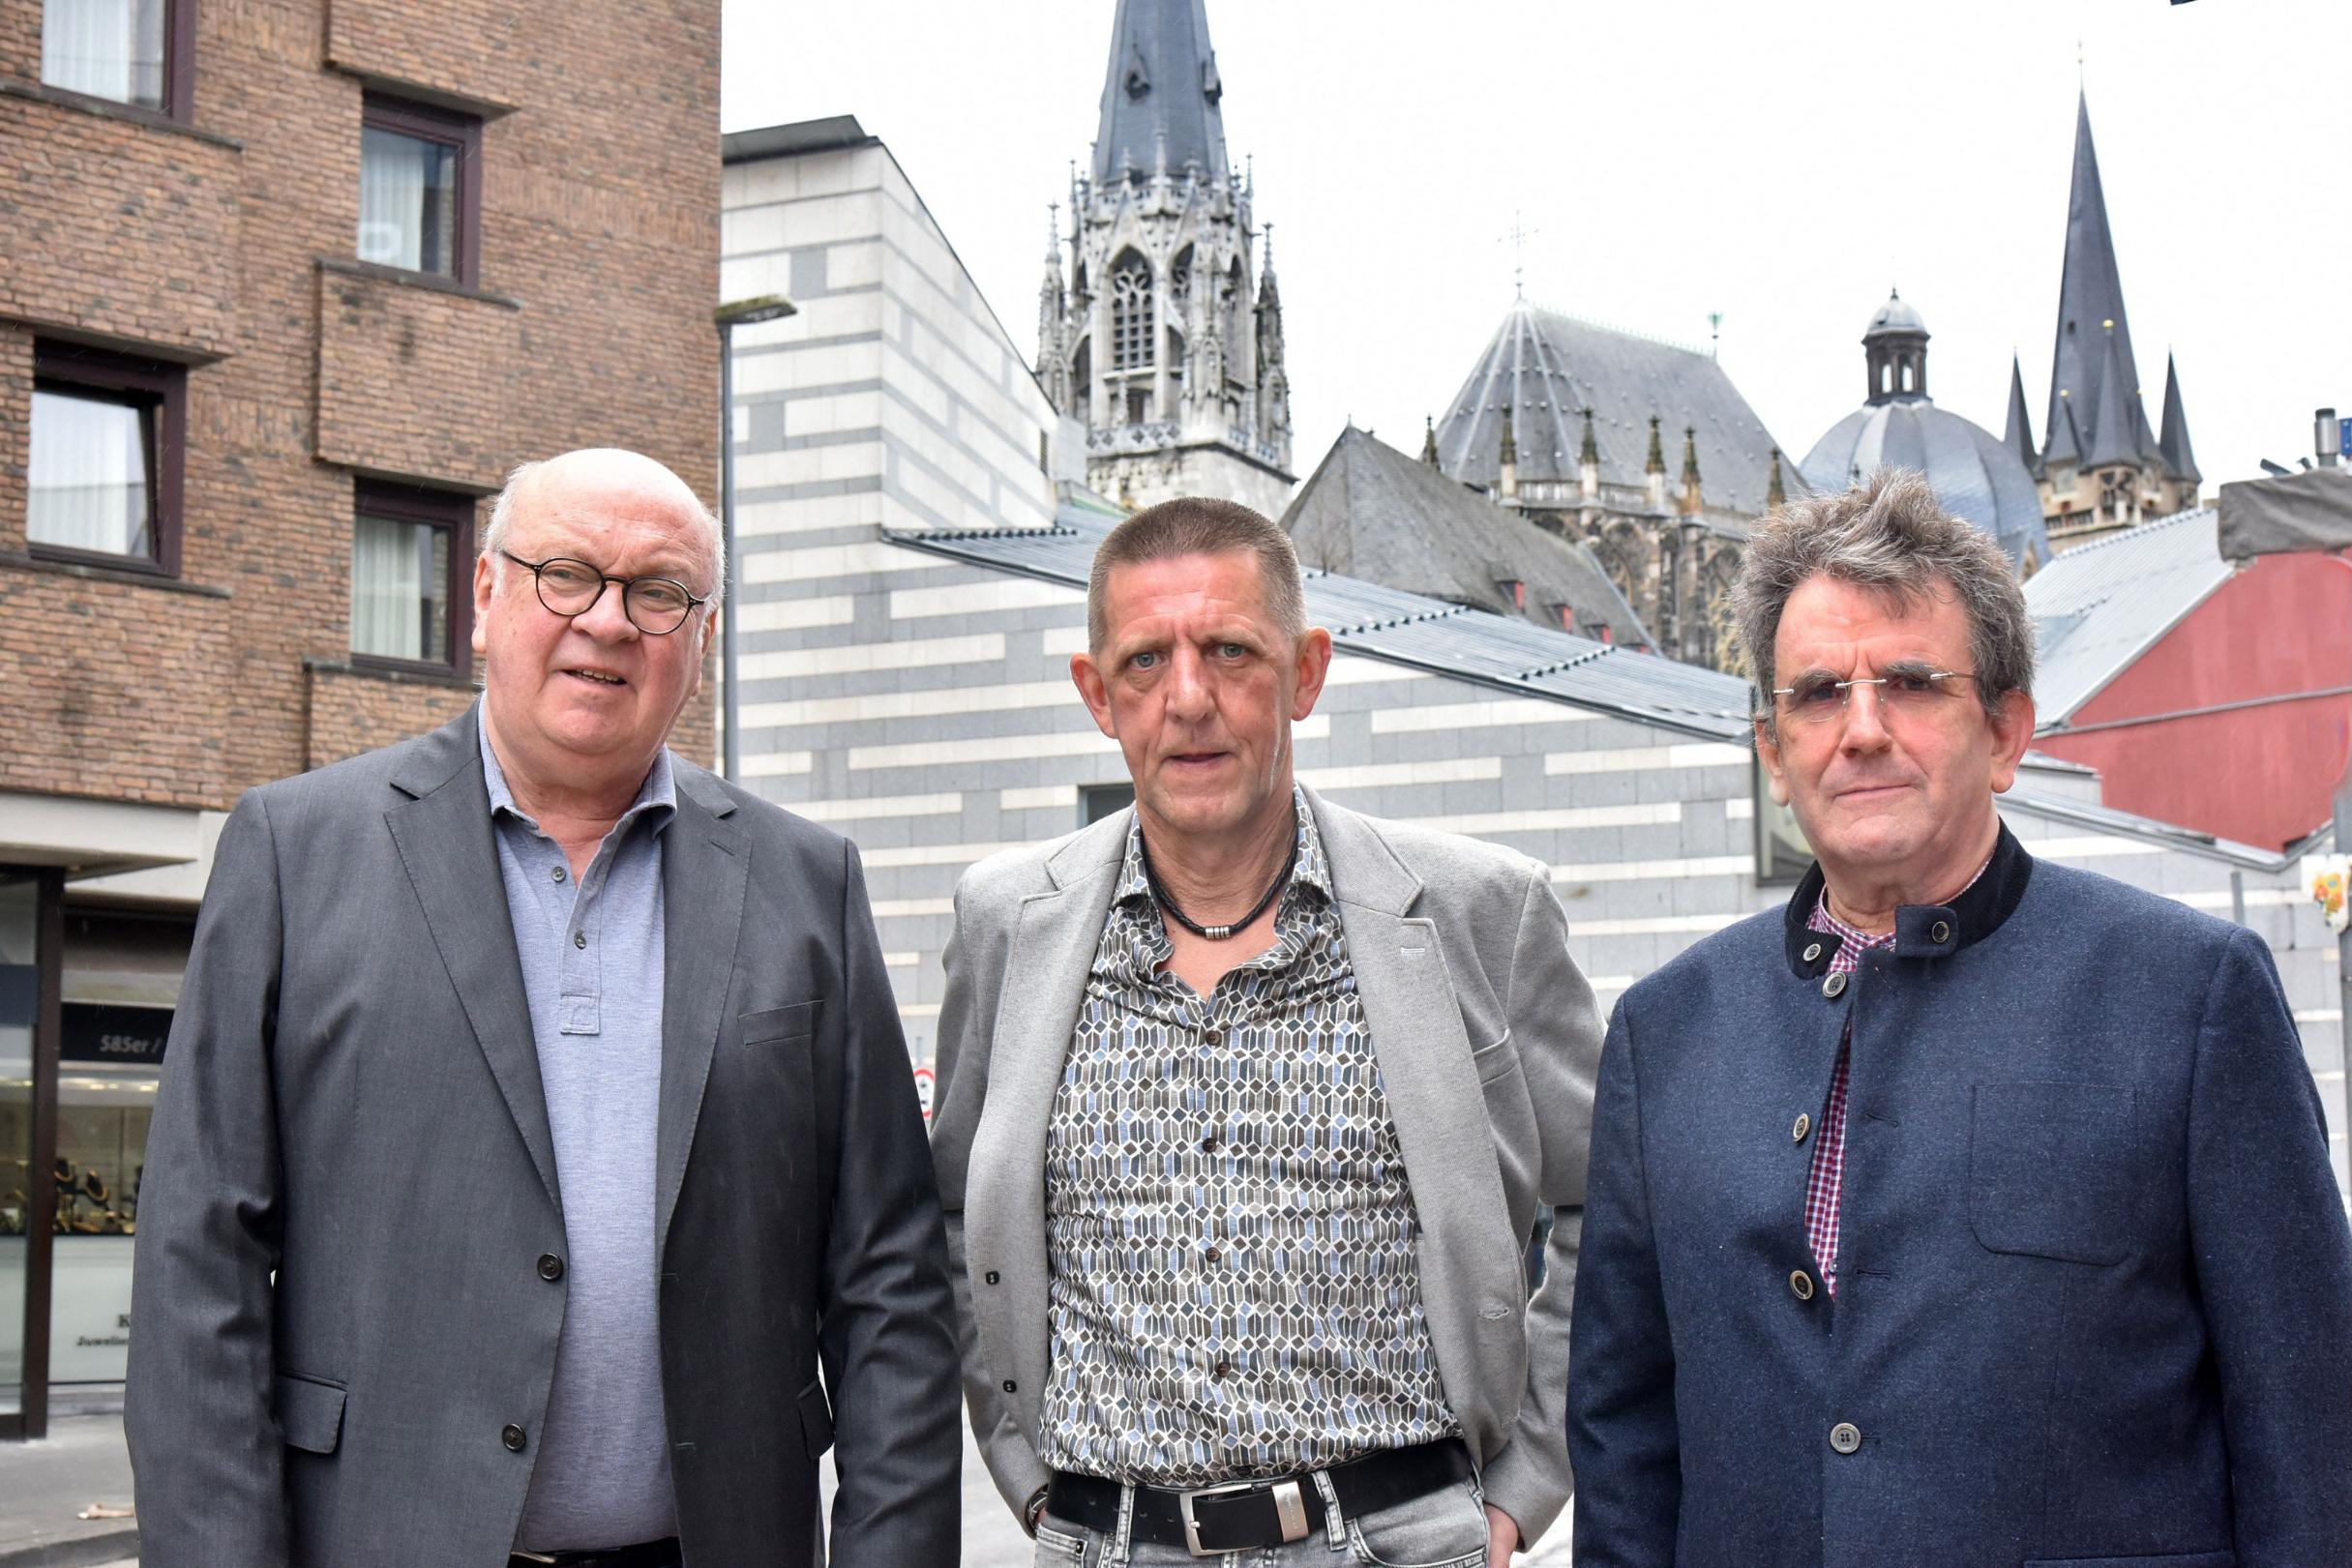 Manfred Schmitz, Thomas F und Paul Leidner (von links) sind Teil des Betroffenenrats im Bistum Aachen und setzen sich für die Belange von Opfern sexualisierter Gewalt ein.